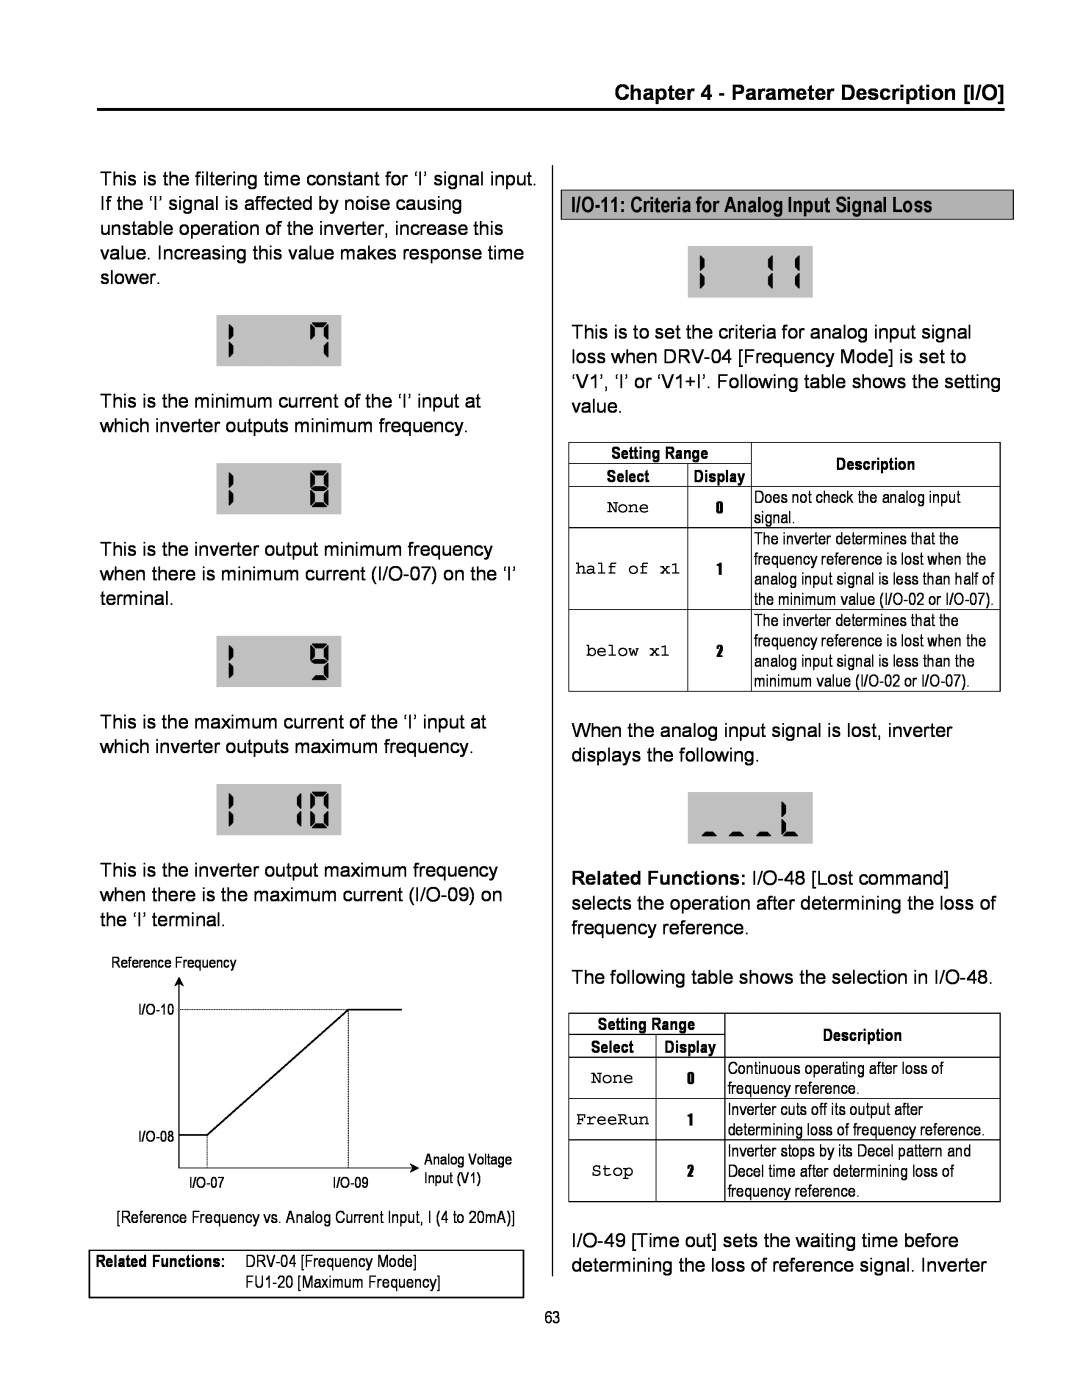 Cleveland Range inverter manual Parameter Description I/O, I/O-11 Criteria for Analog Input Signal Loss 